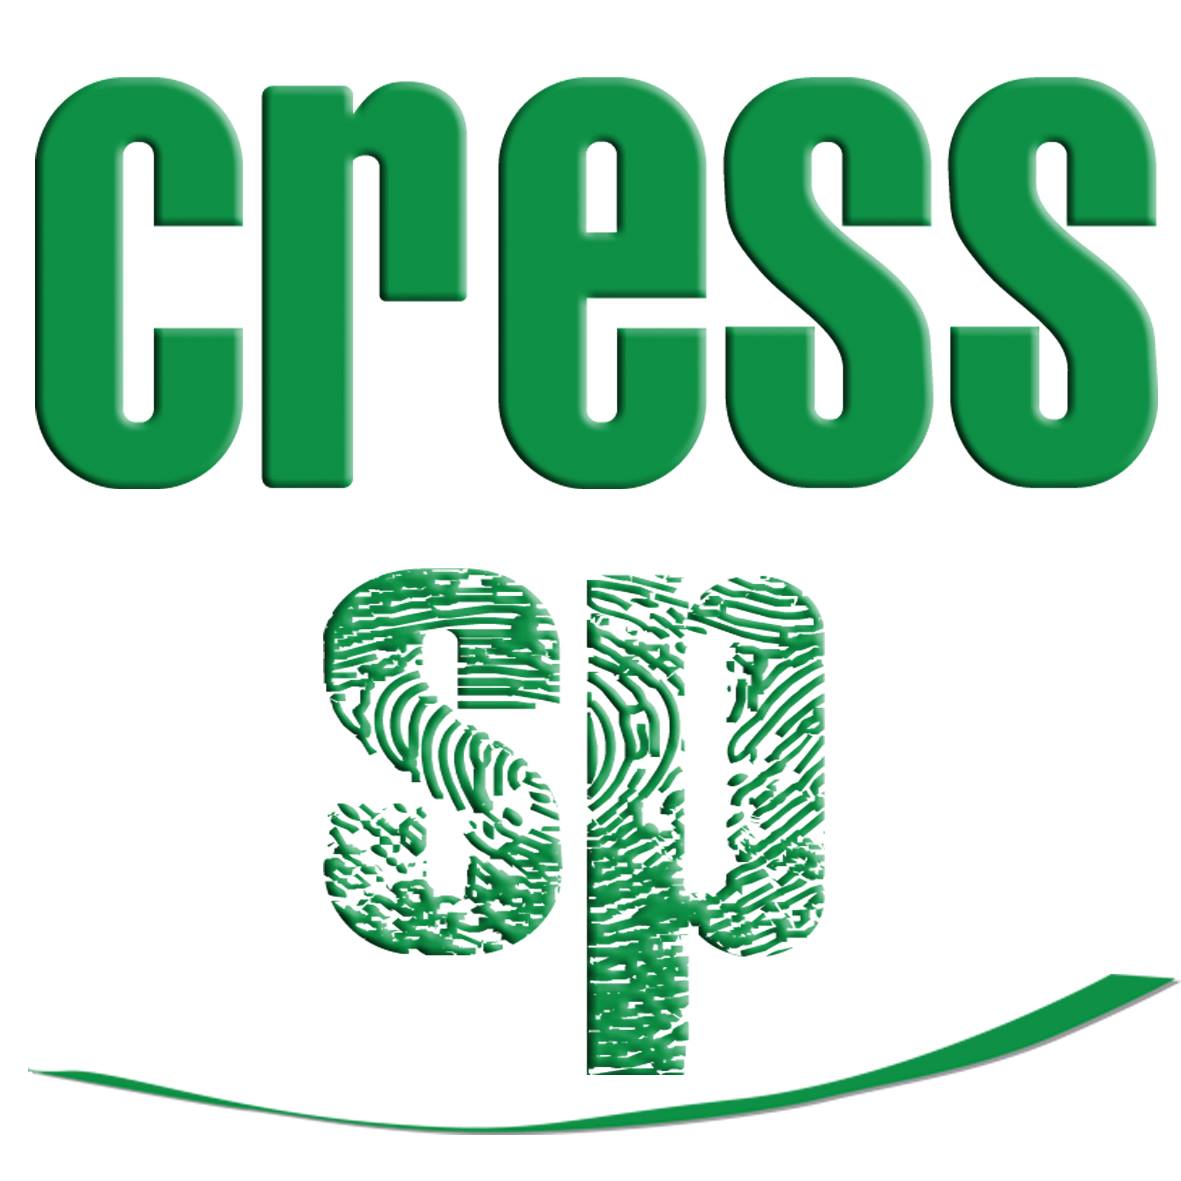 CRESS SP